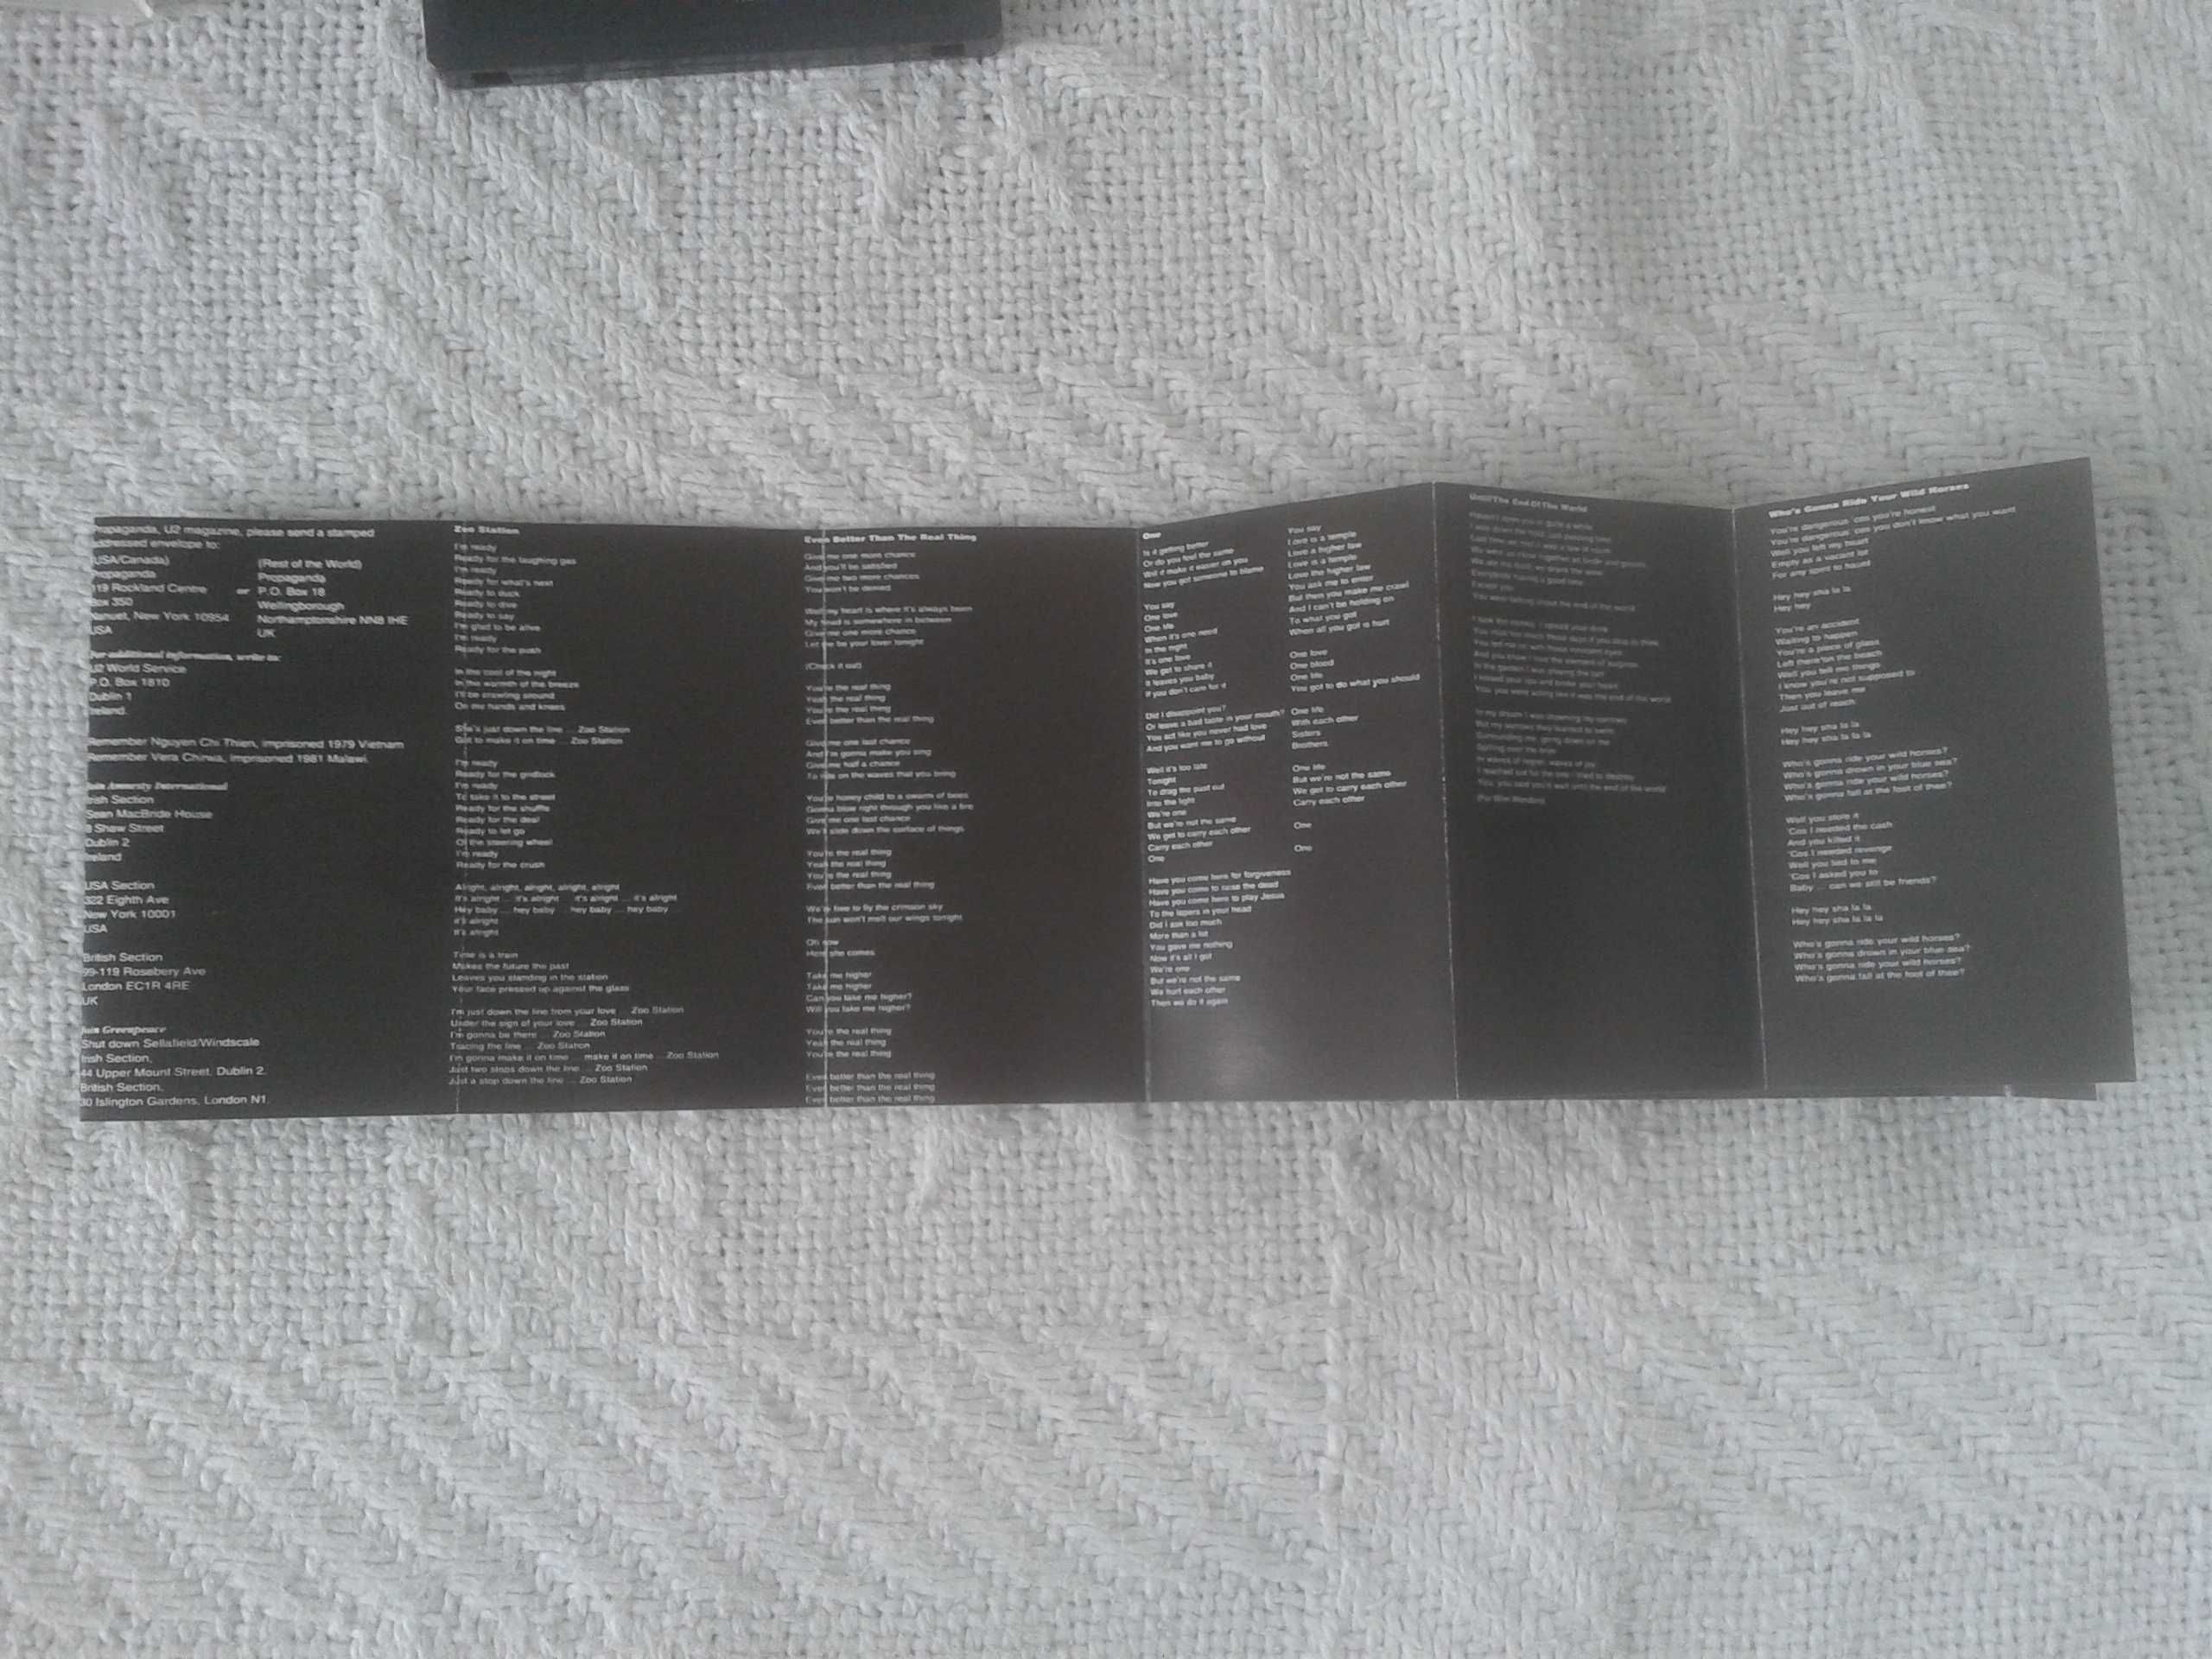 Sprzedam oryginalną kasetę magnetofonową grupy U2 "Achtung Baby"